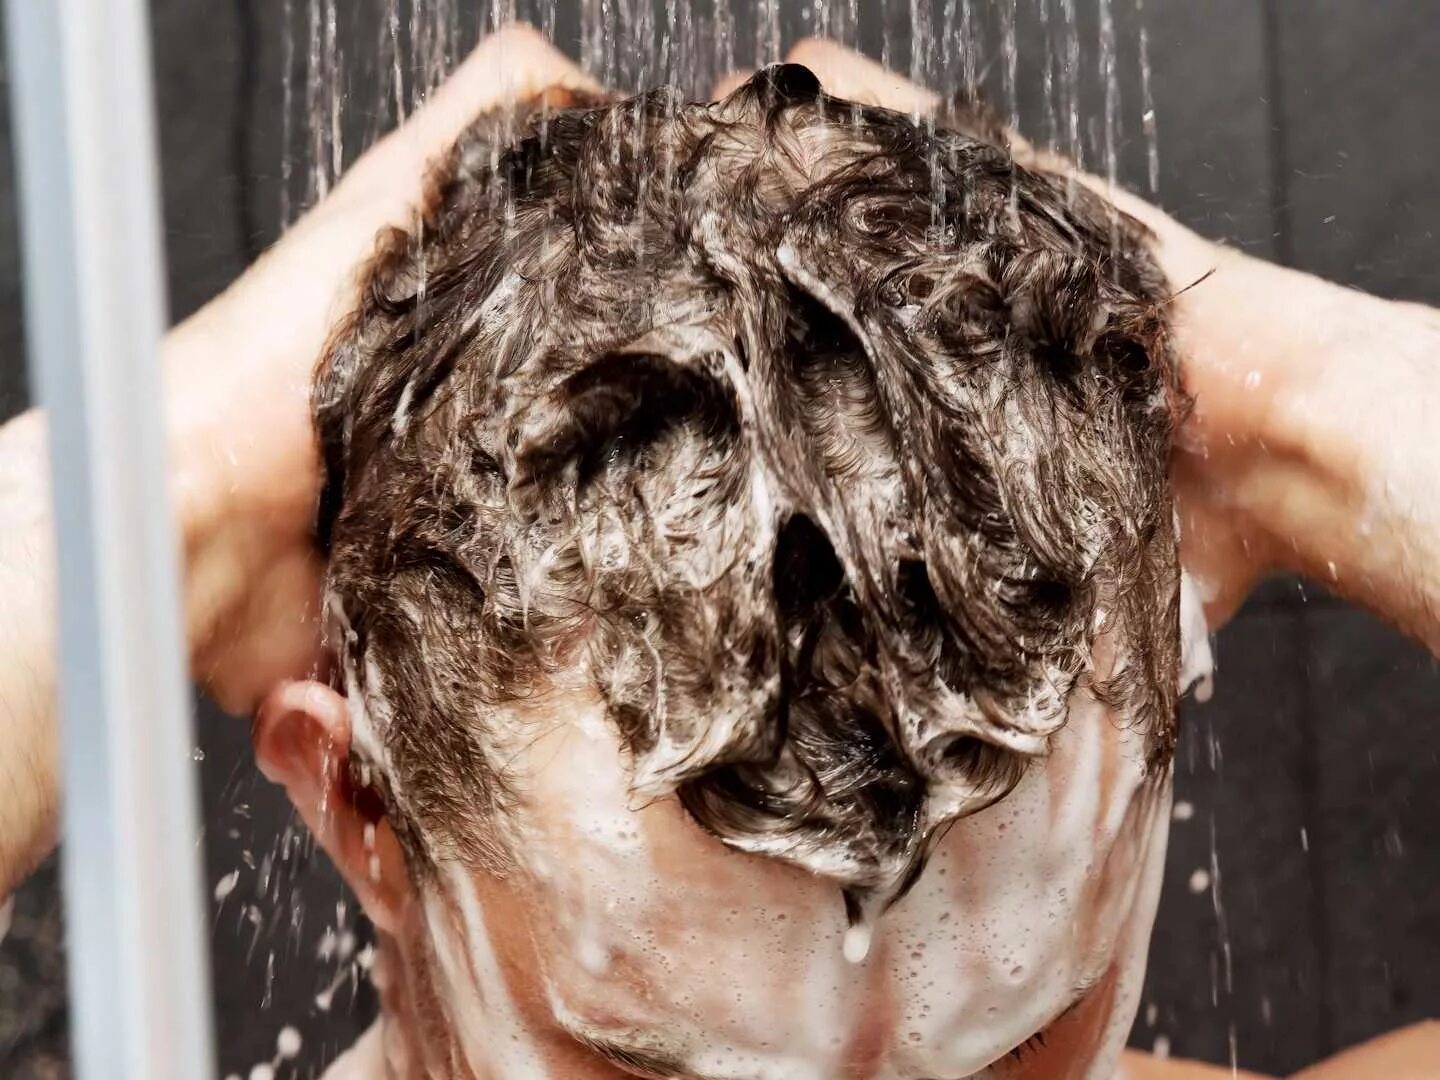 Мытье головы. Мытье головы мужчине. Мытье волос мужчина. Мужчина моет голову. Мыть голову в душе